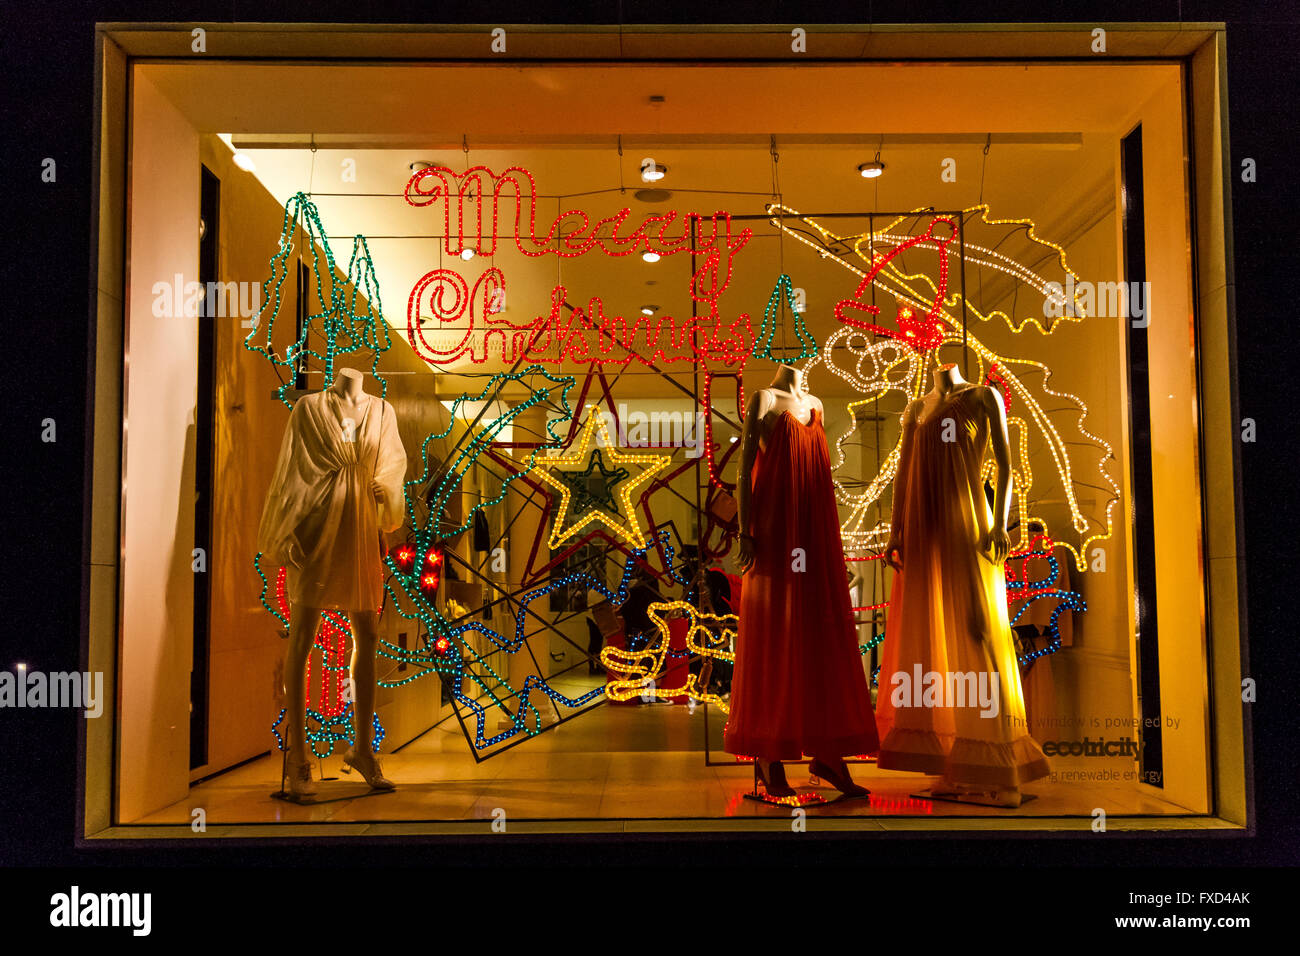 Afficher la fenêtre de Stella McCartney à Noël Bruton 30 St . Londres Banque D'Images